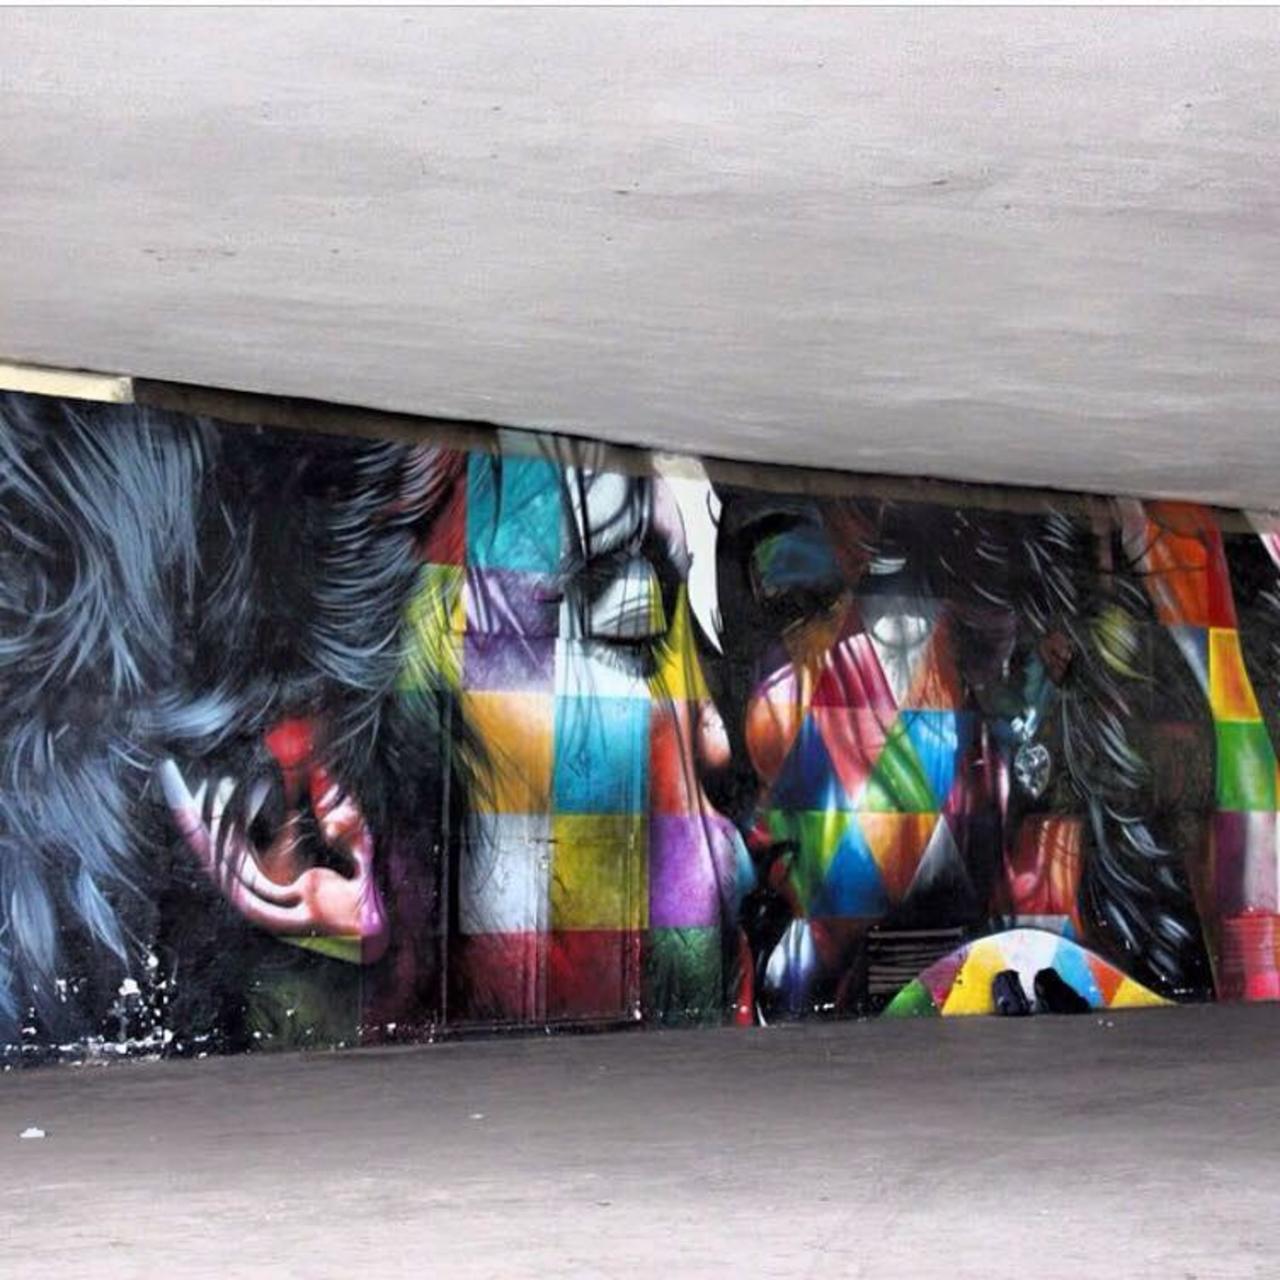 Sistemas4s: New Street Art by the brilliant Eduardo Kobra 

#art #mural #graffiti #streetart http://t.co/lk1fcAY4eP